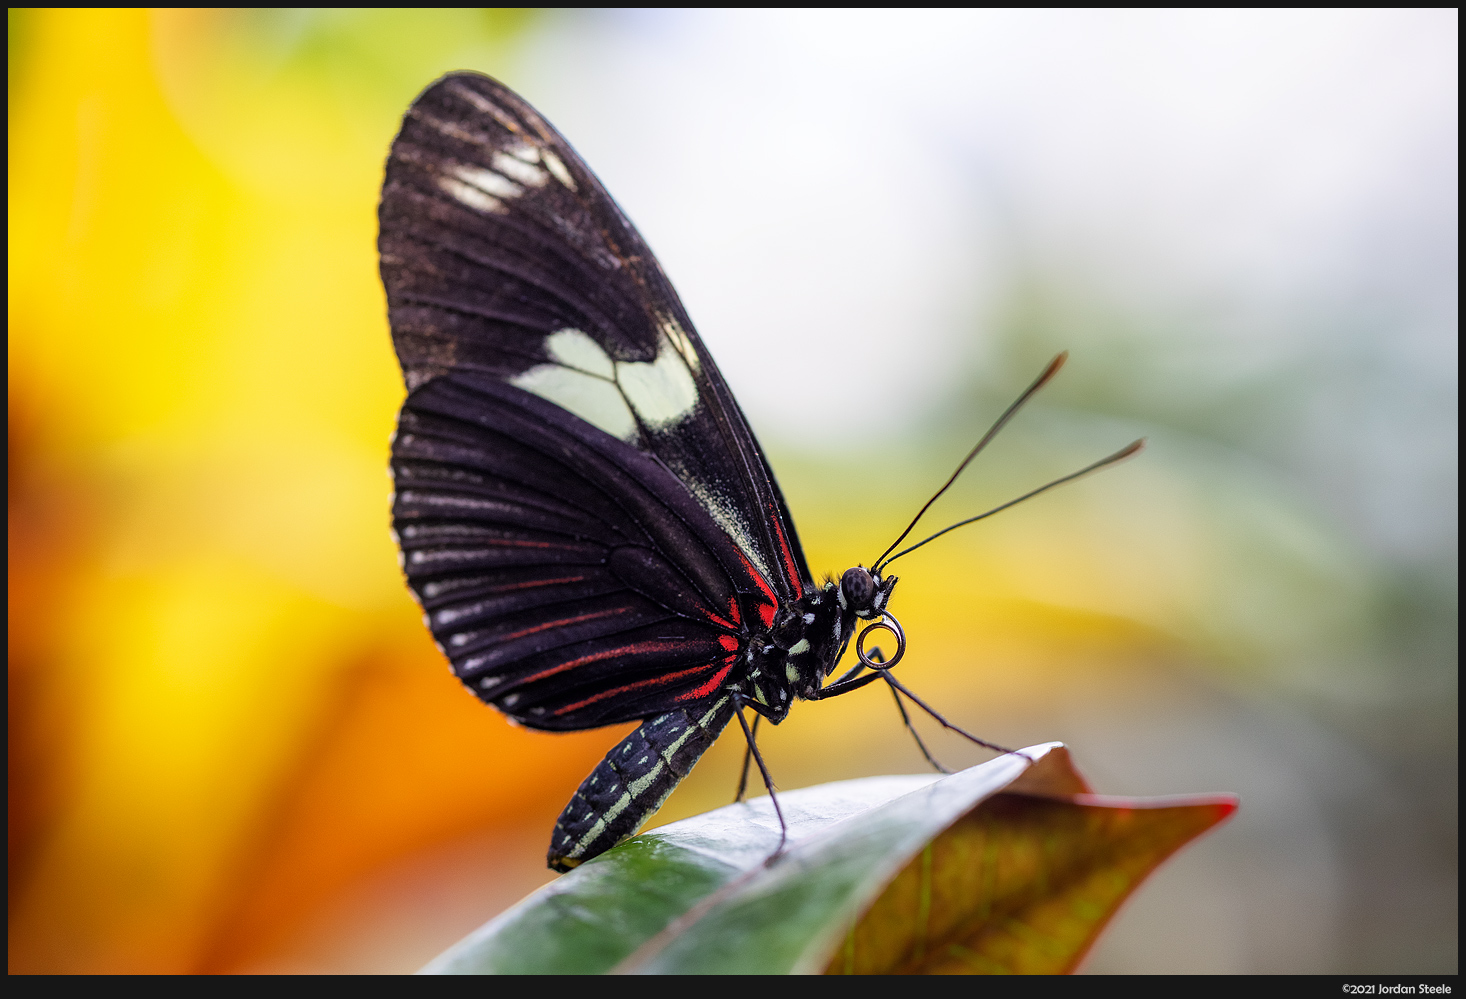 IMAGE: http://www.jordansteele.com/2021/butterfly1_potn.jpg